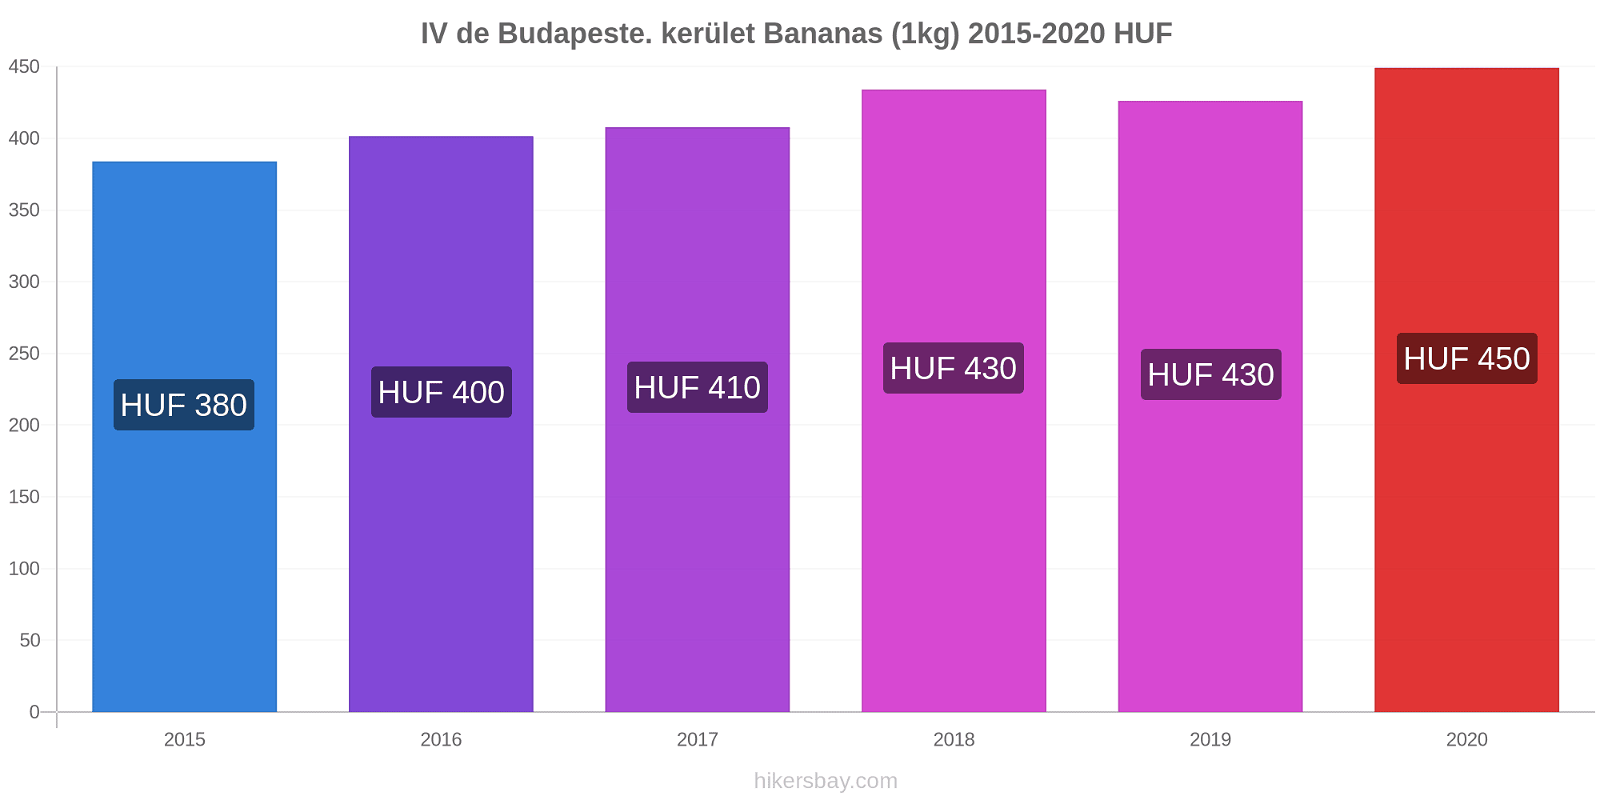 IV de Budapeste. kerület variação de preço Banana (1kg) hikersbay.com